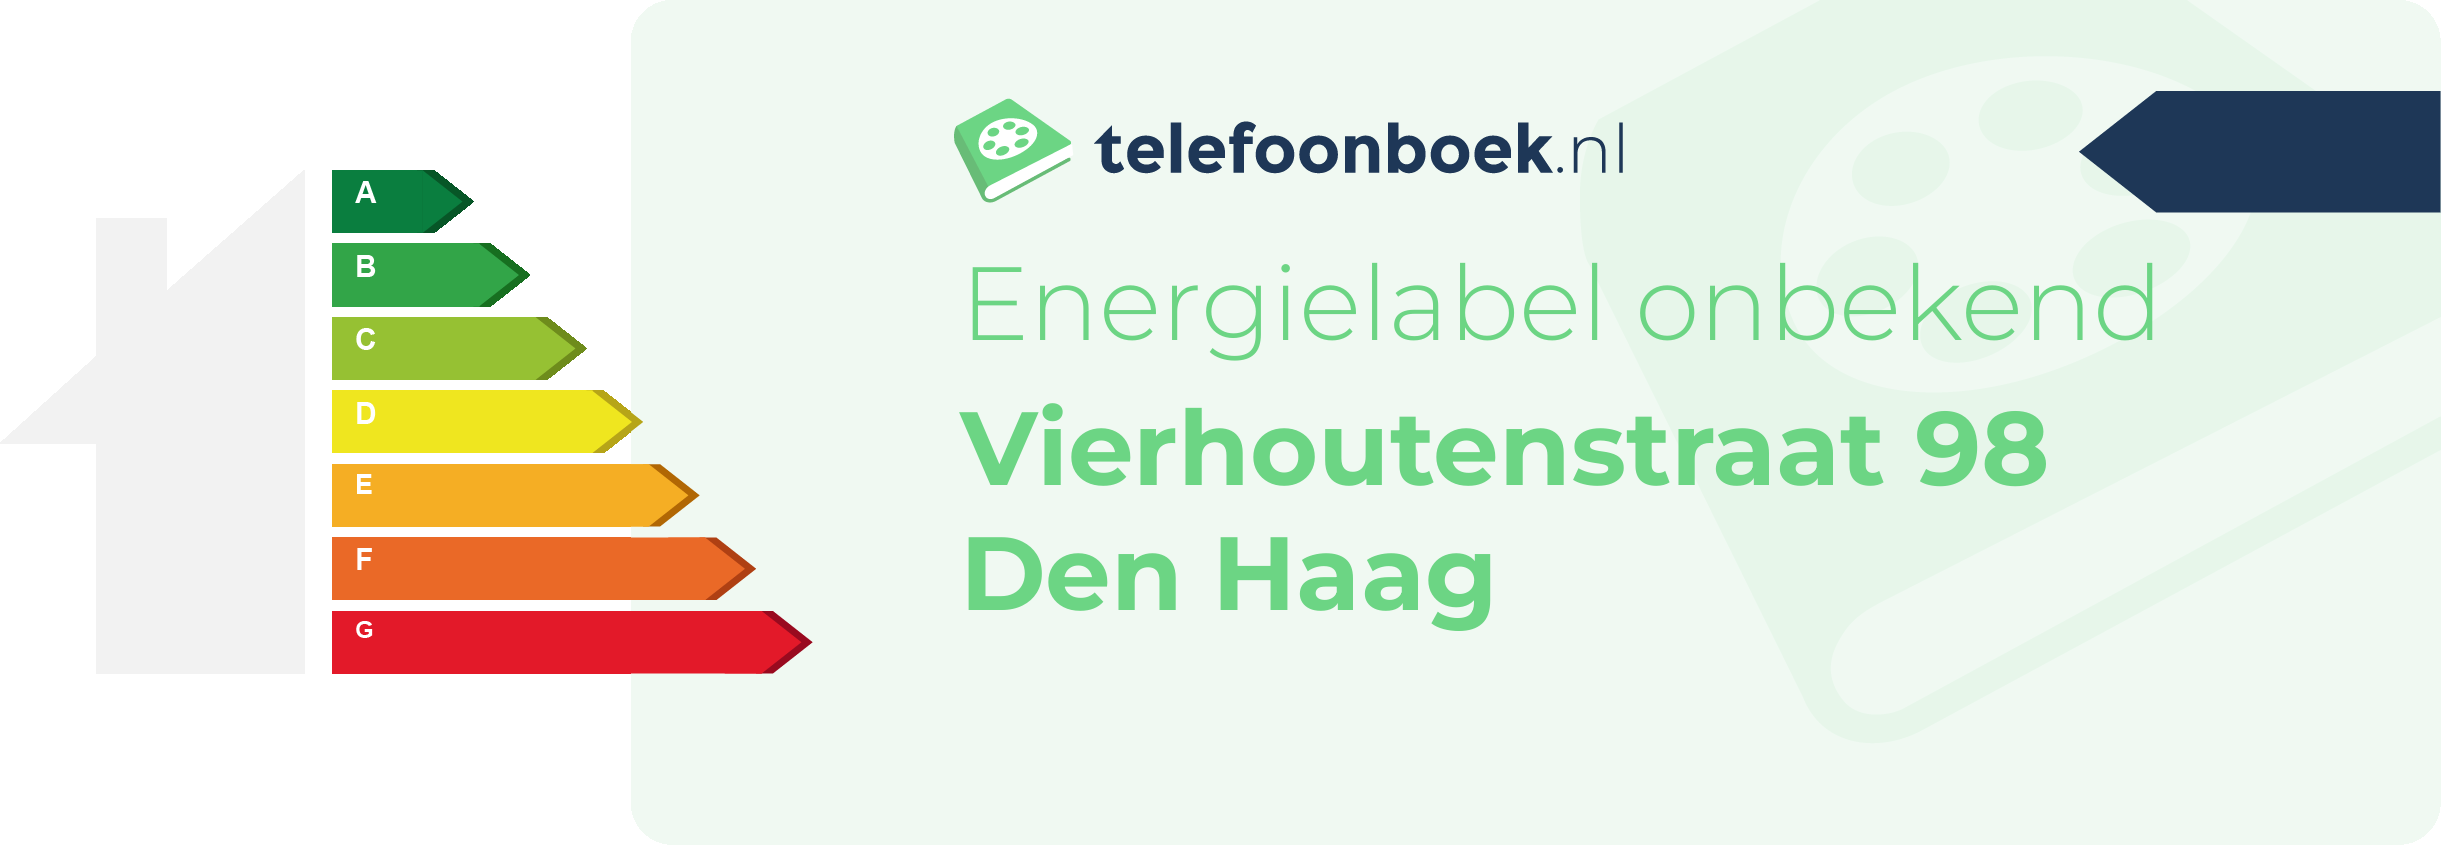 Energielabel Vierhoutenstraat 98 Den Haag